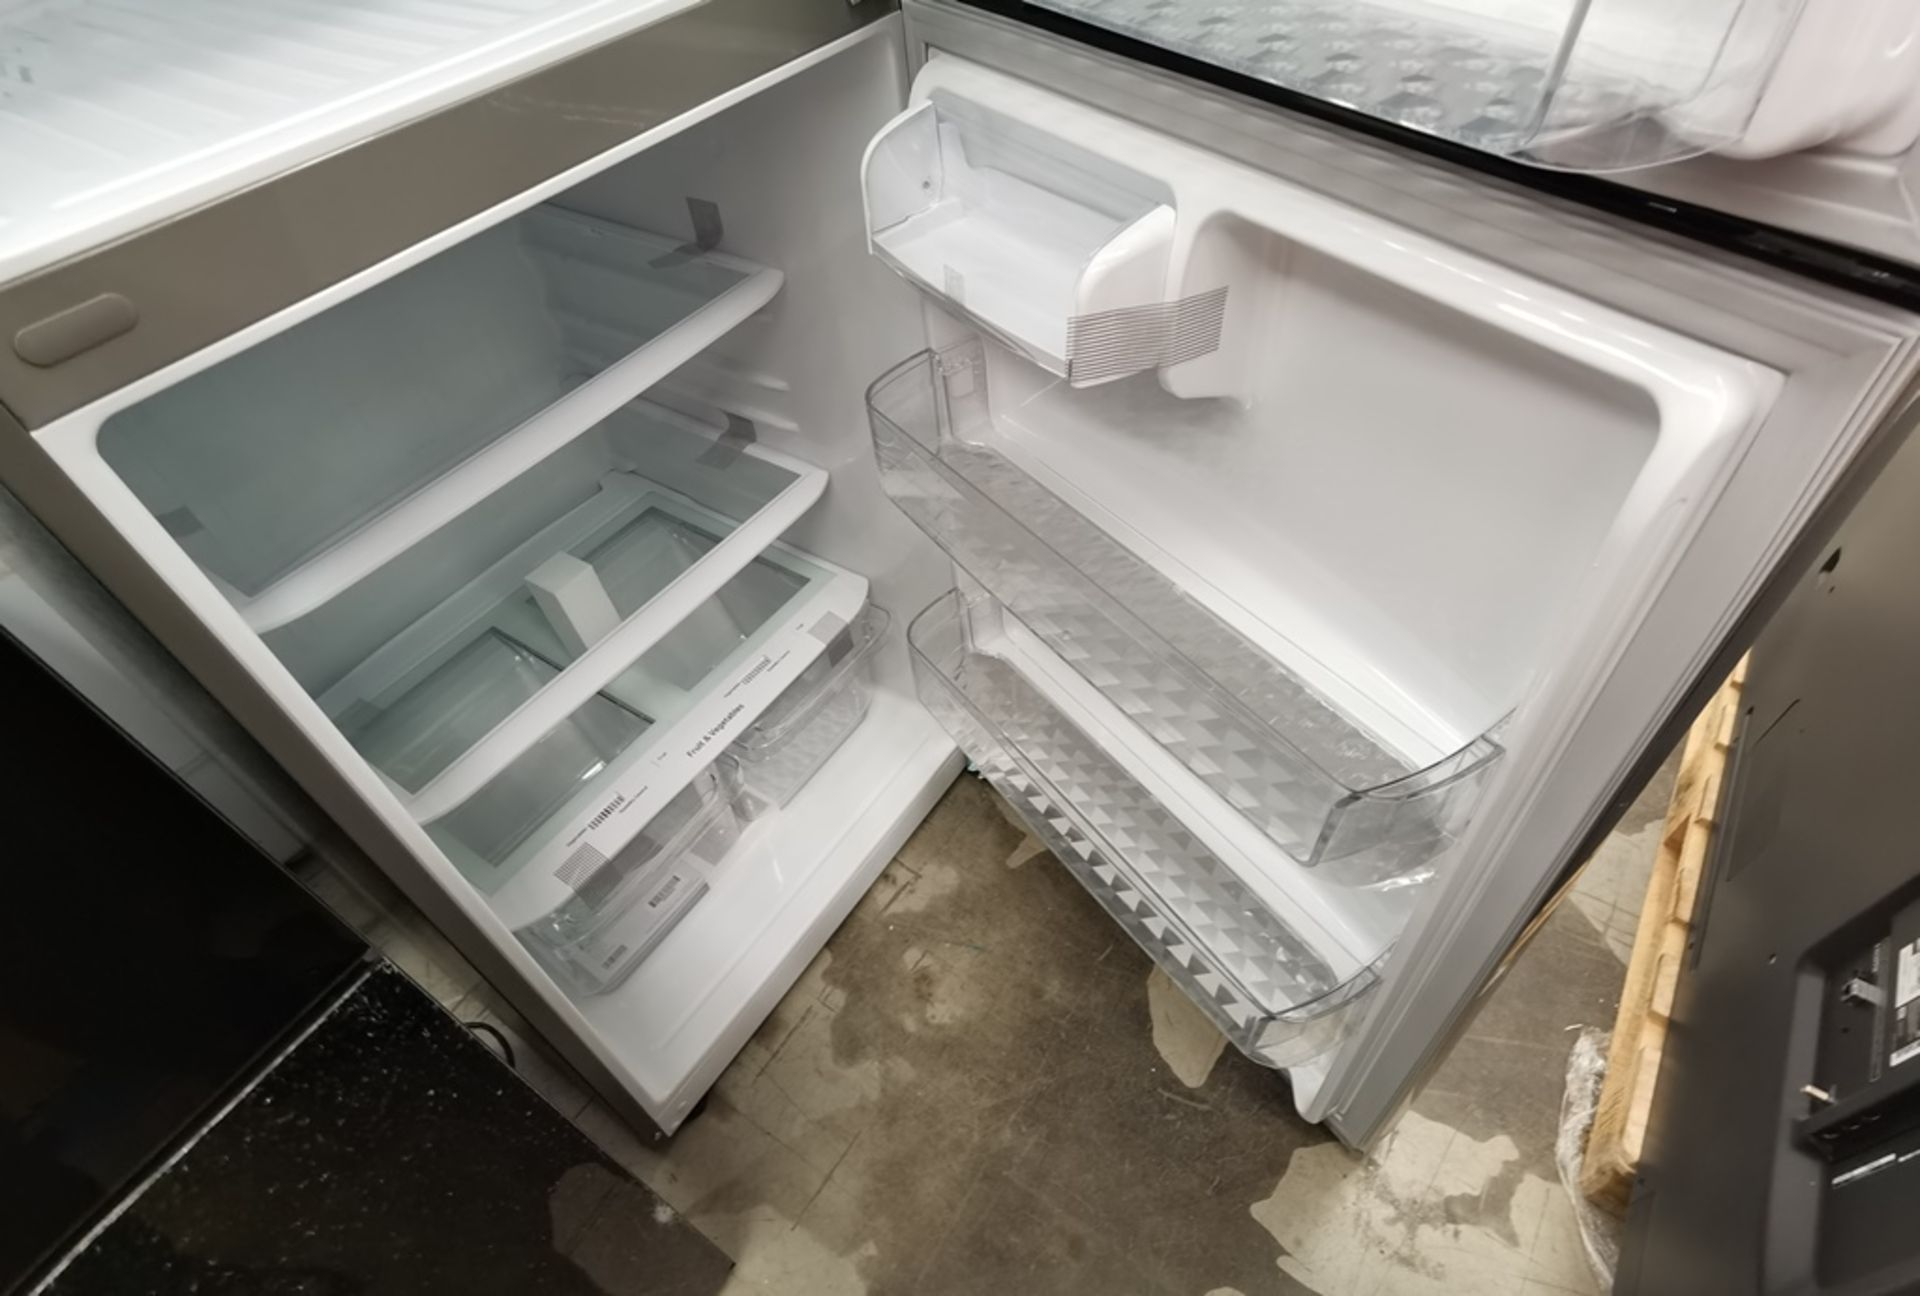 Lote De 2 Refrigeradores Contiene: 1 Refrigerador Marca Mabe, Modelo RMT400RY, Serie 2206B407247, C - Image 12 of 15